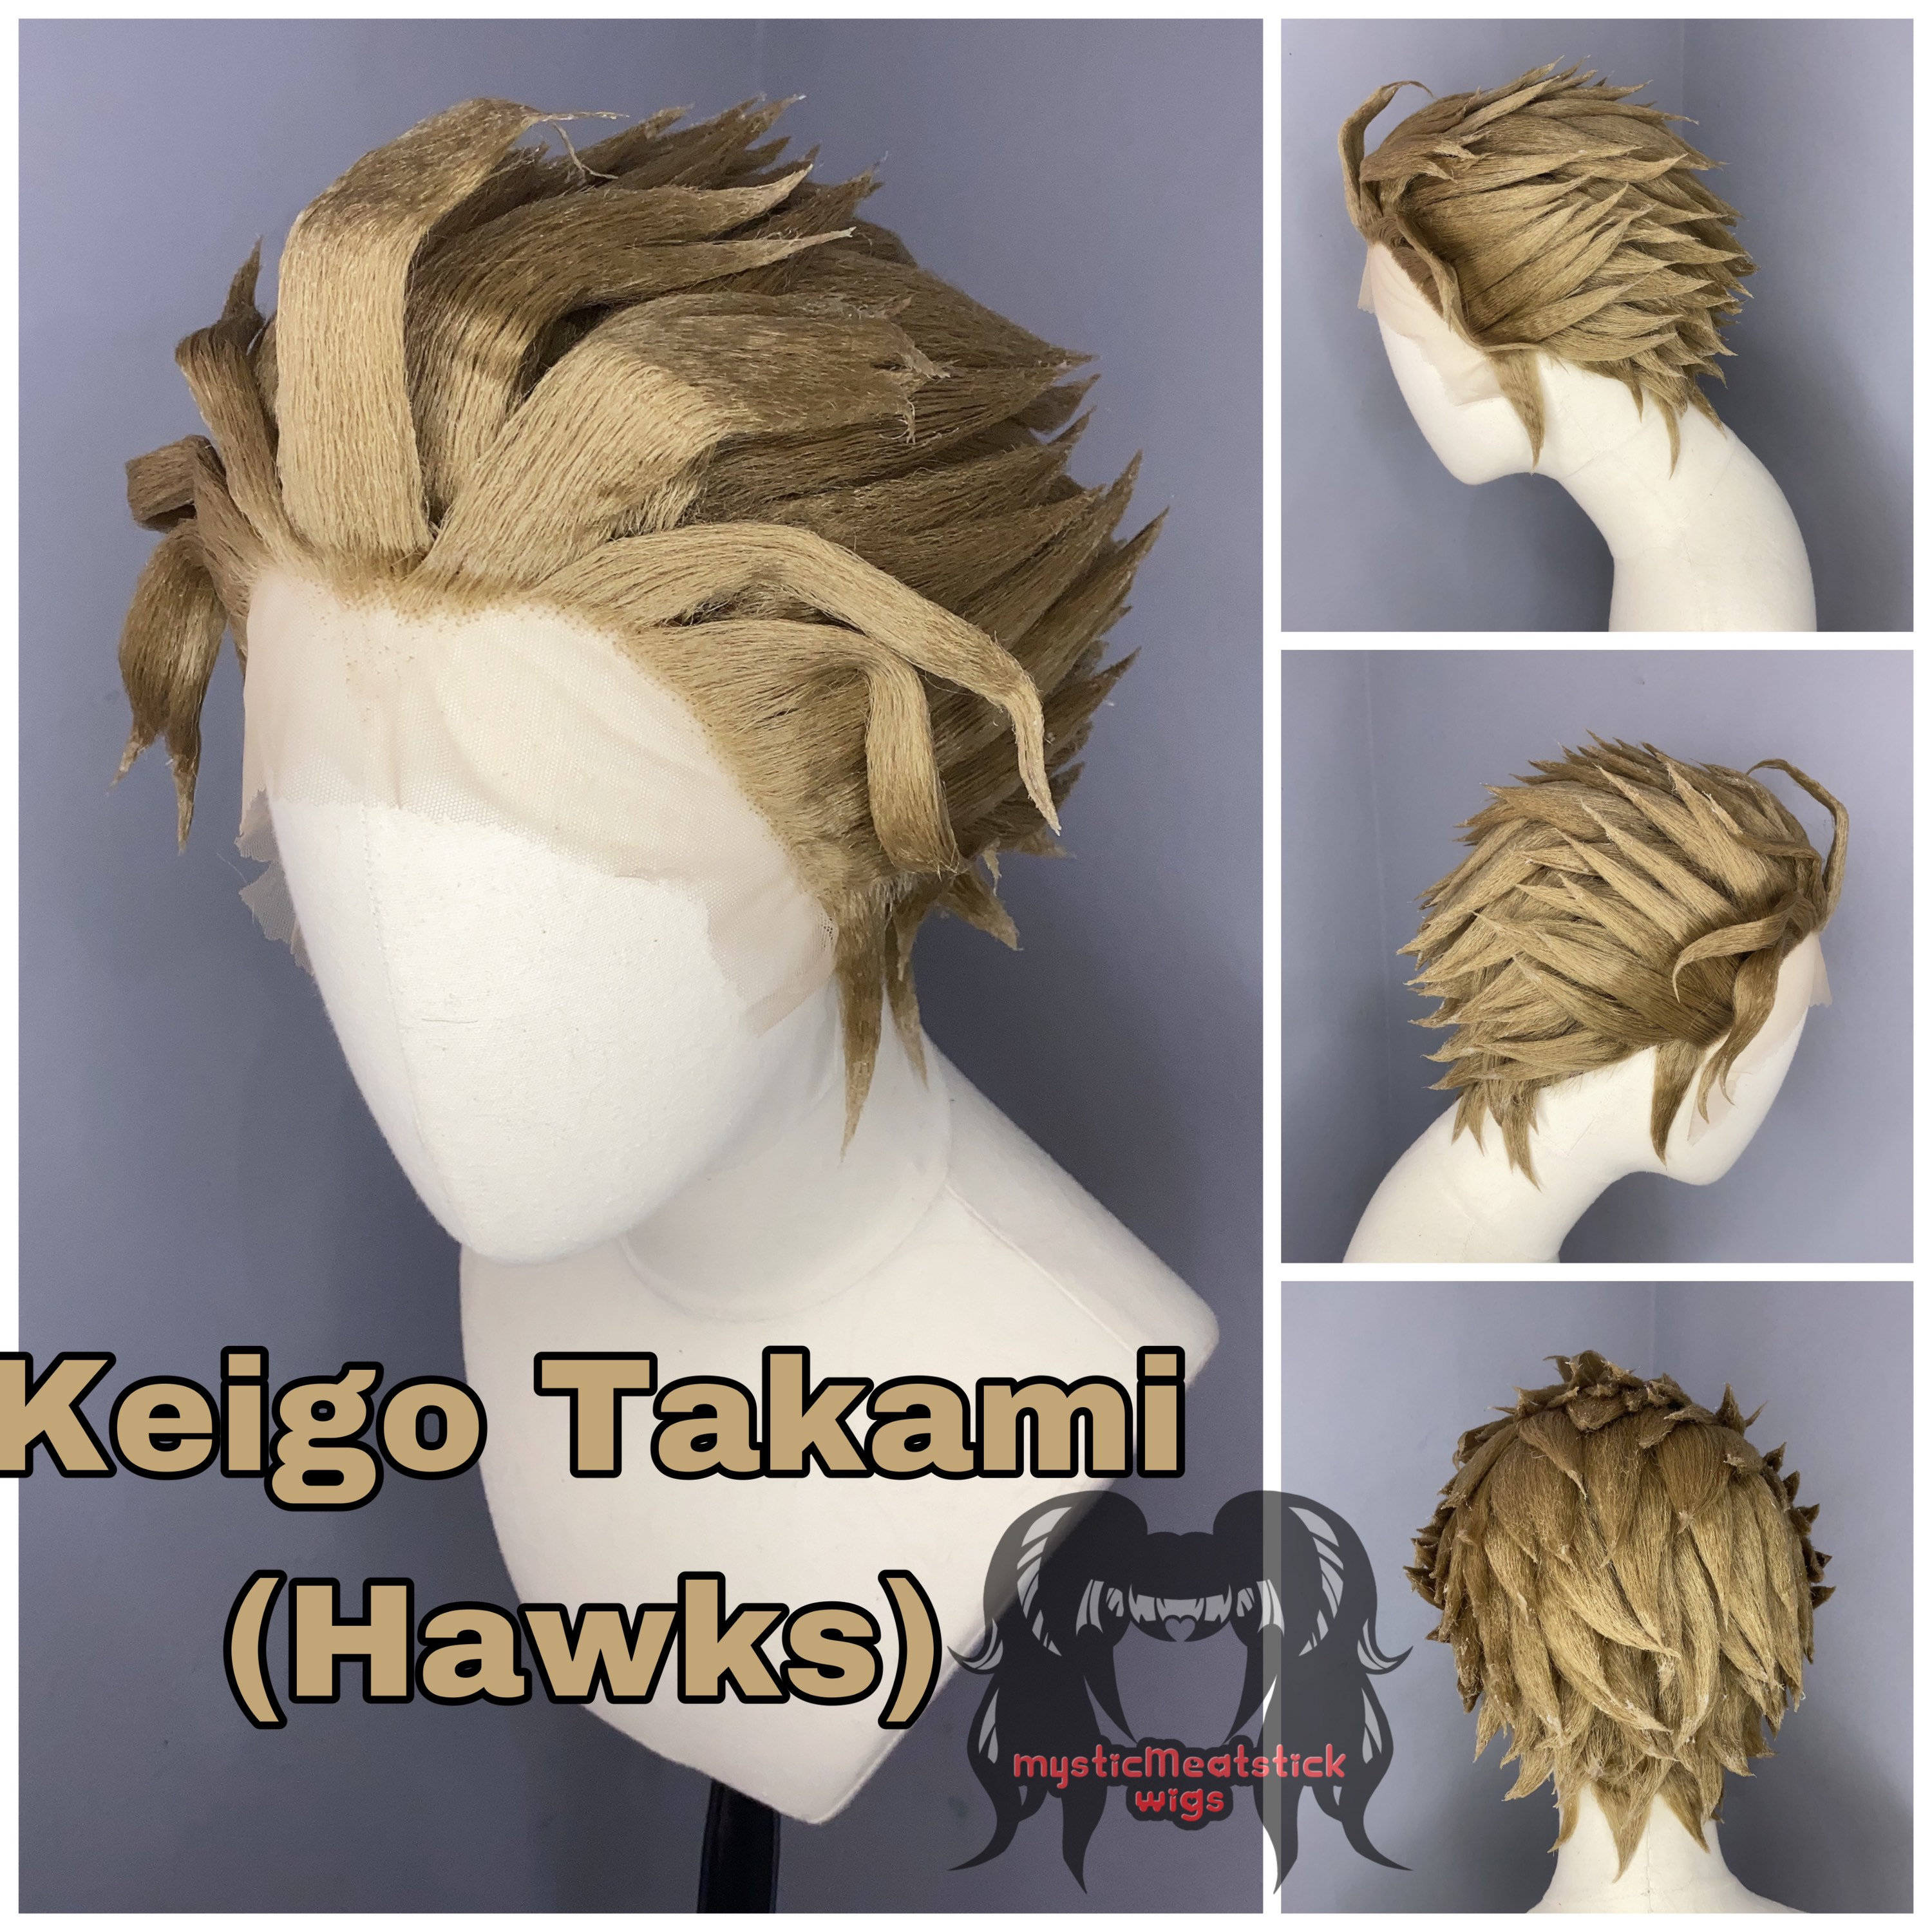 How well do you know Keigo Takami?(Hawks Quiz)